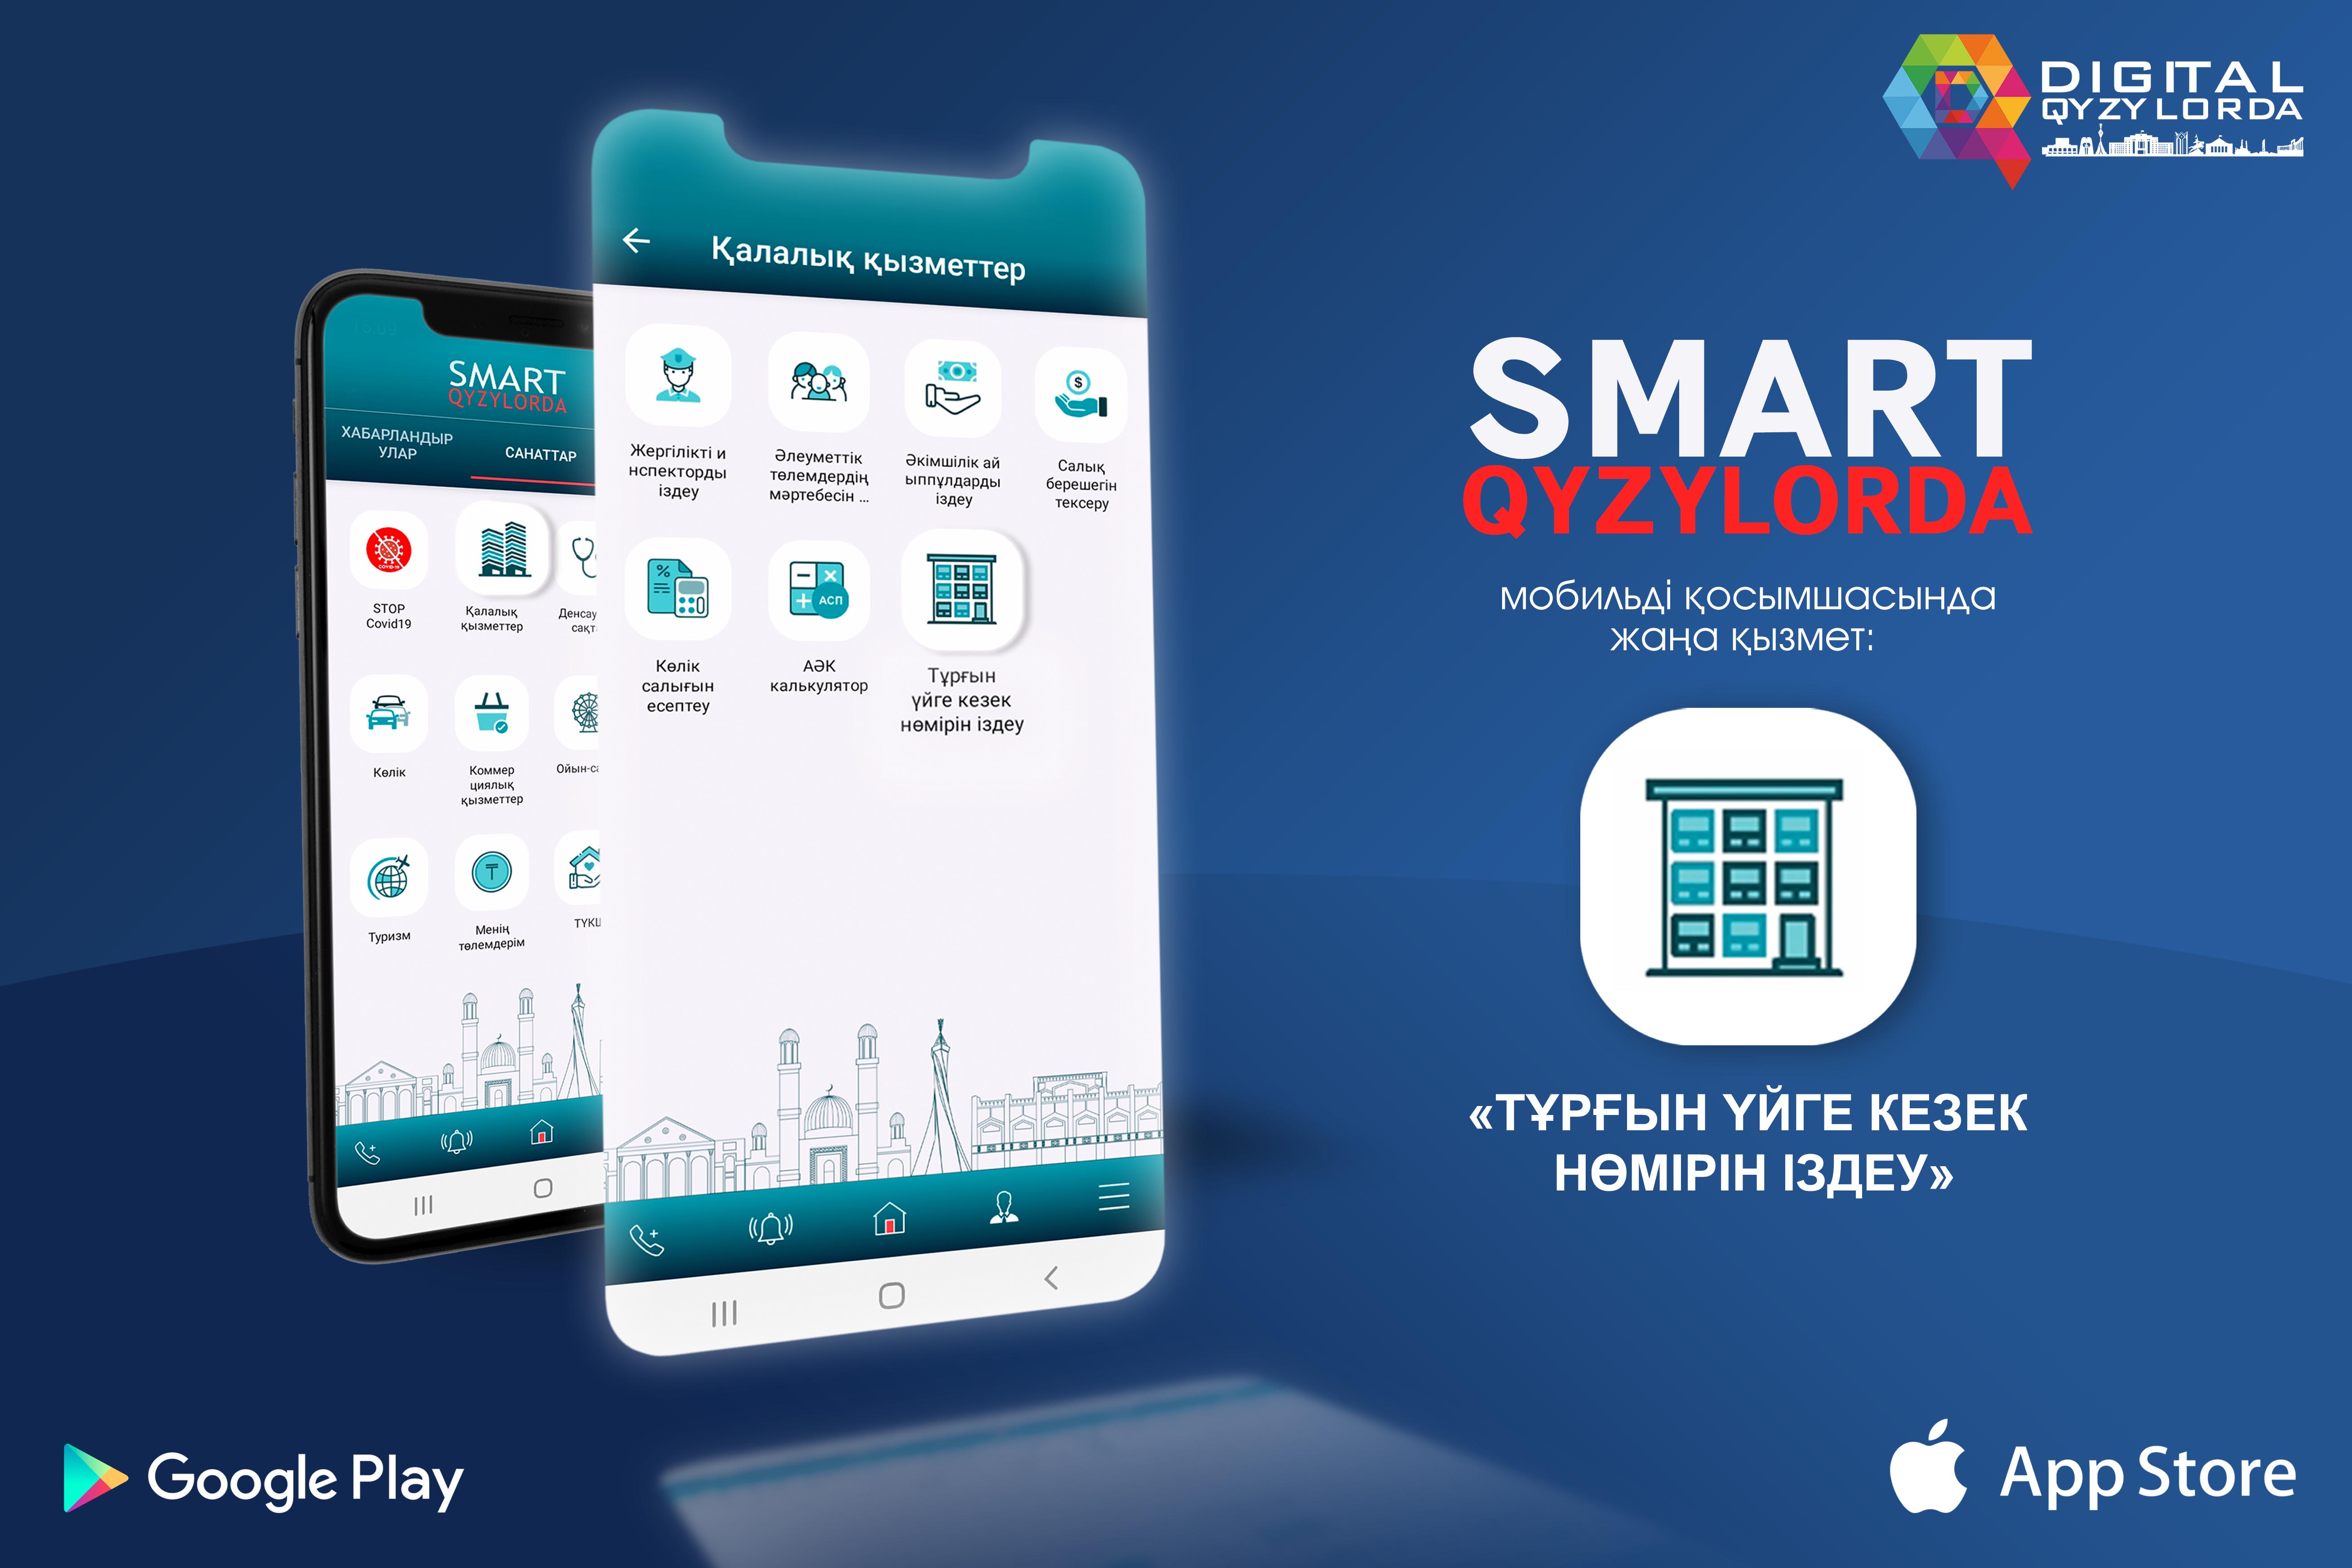 Smart Qyzylorda мобильді қосымшасы өз функцияларын кеңейтуде